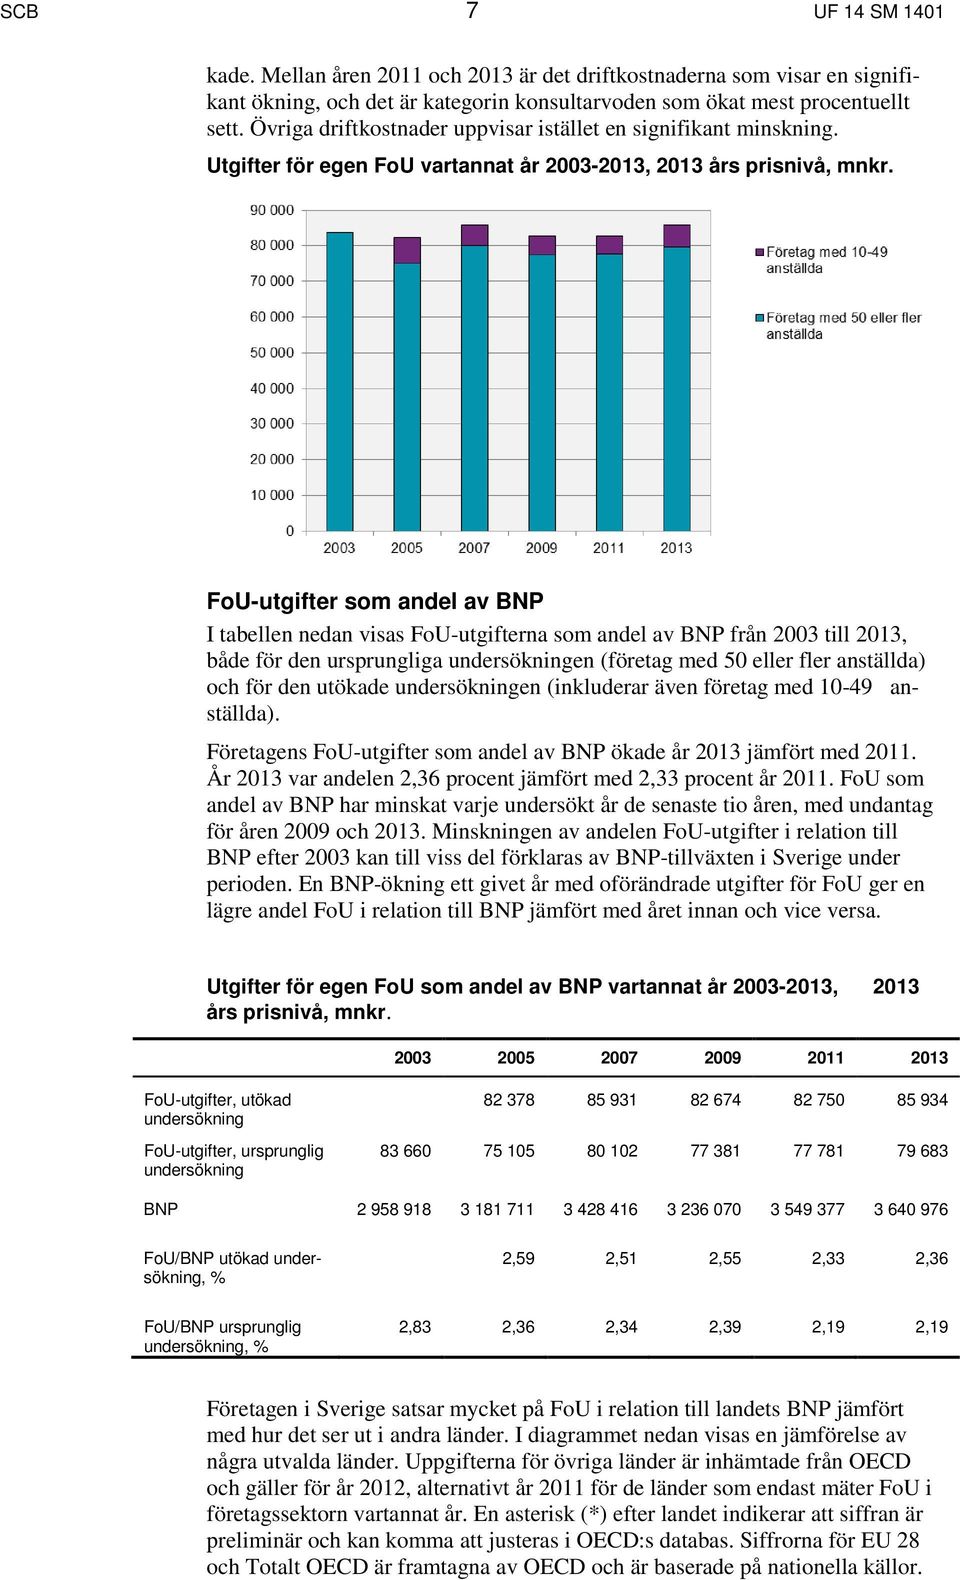 FoU-utgifter som andel av BNP I tabellen nedan visas FoU-utgifterna som andel av BNP från 2003 till 2013, både för den ursprungliga undersökningen (företag med 50 eller fler anställda) och för den